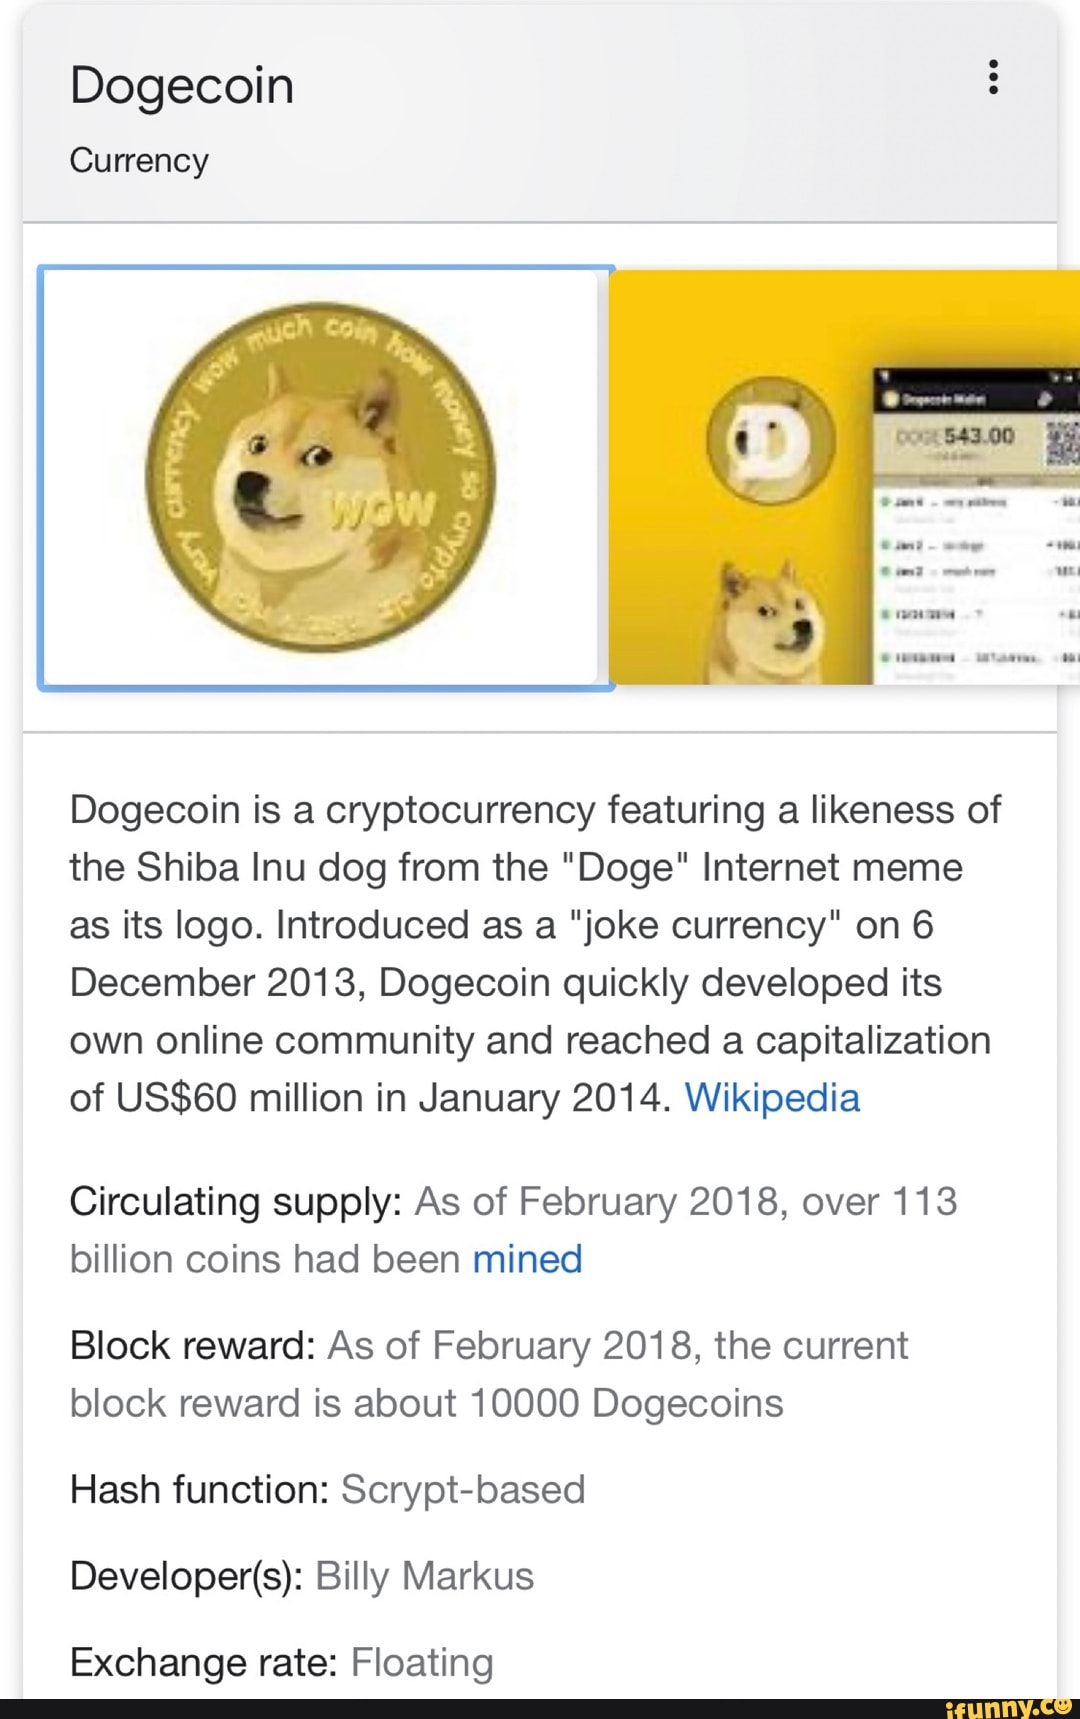 dogecoin circulating supply history